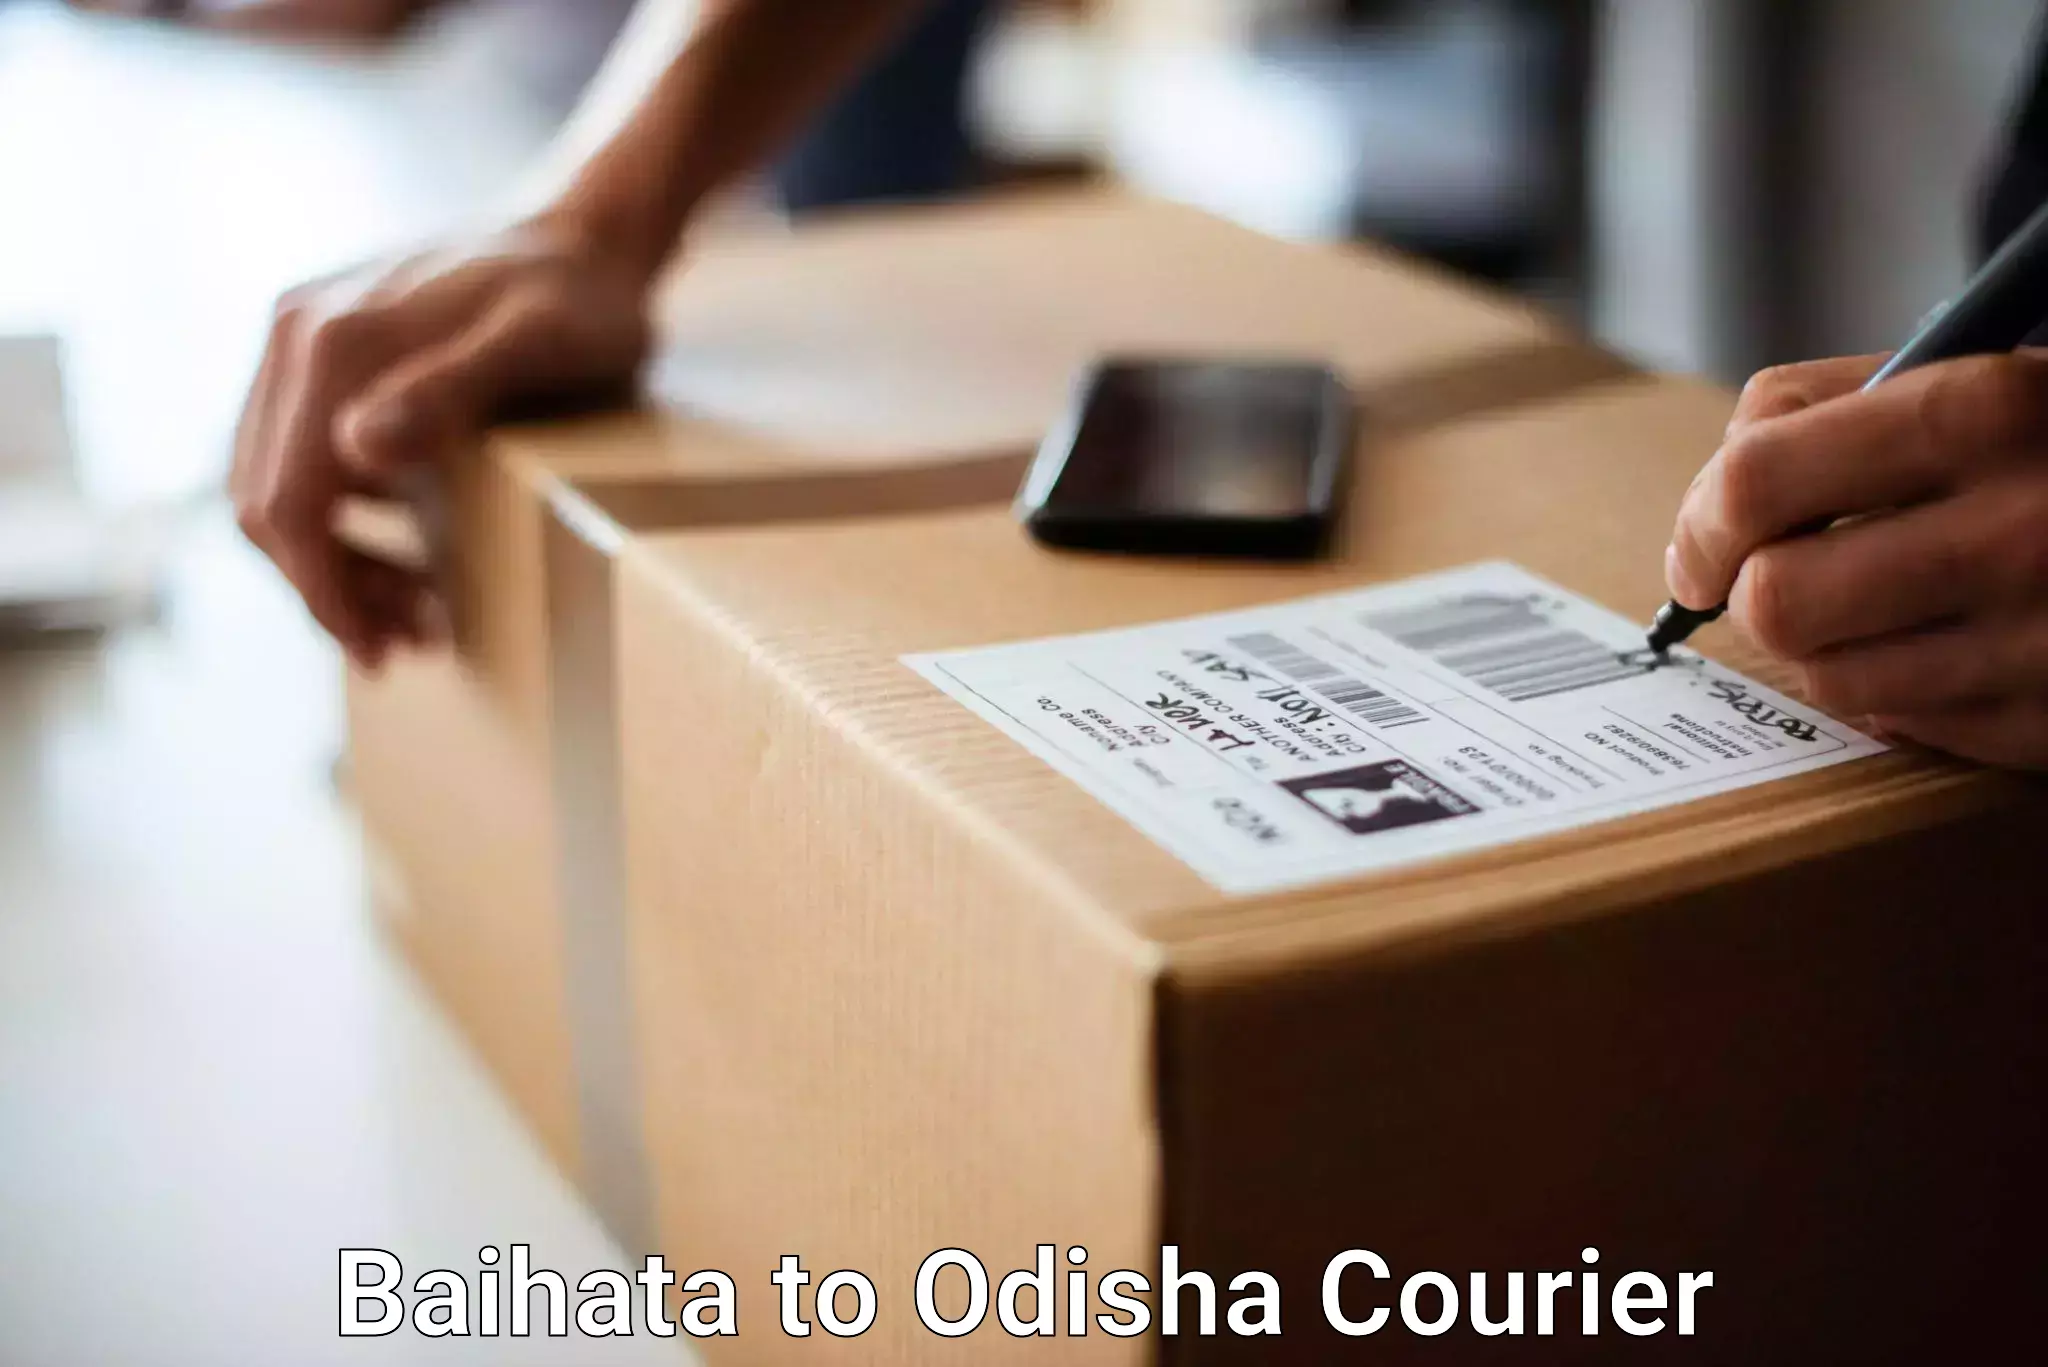 Urgent luggage shipment Baihata to Odisha